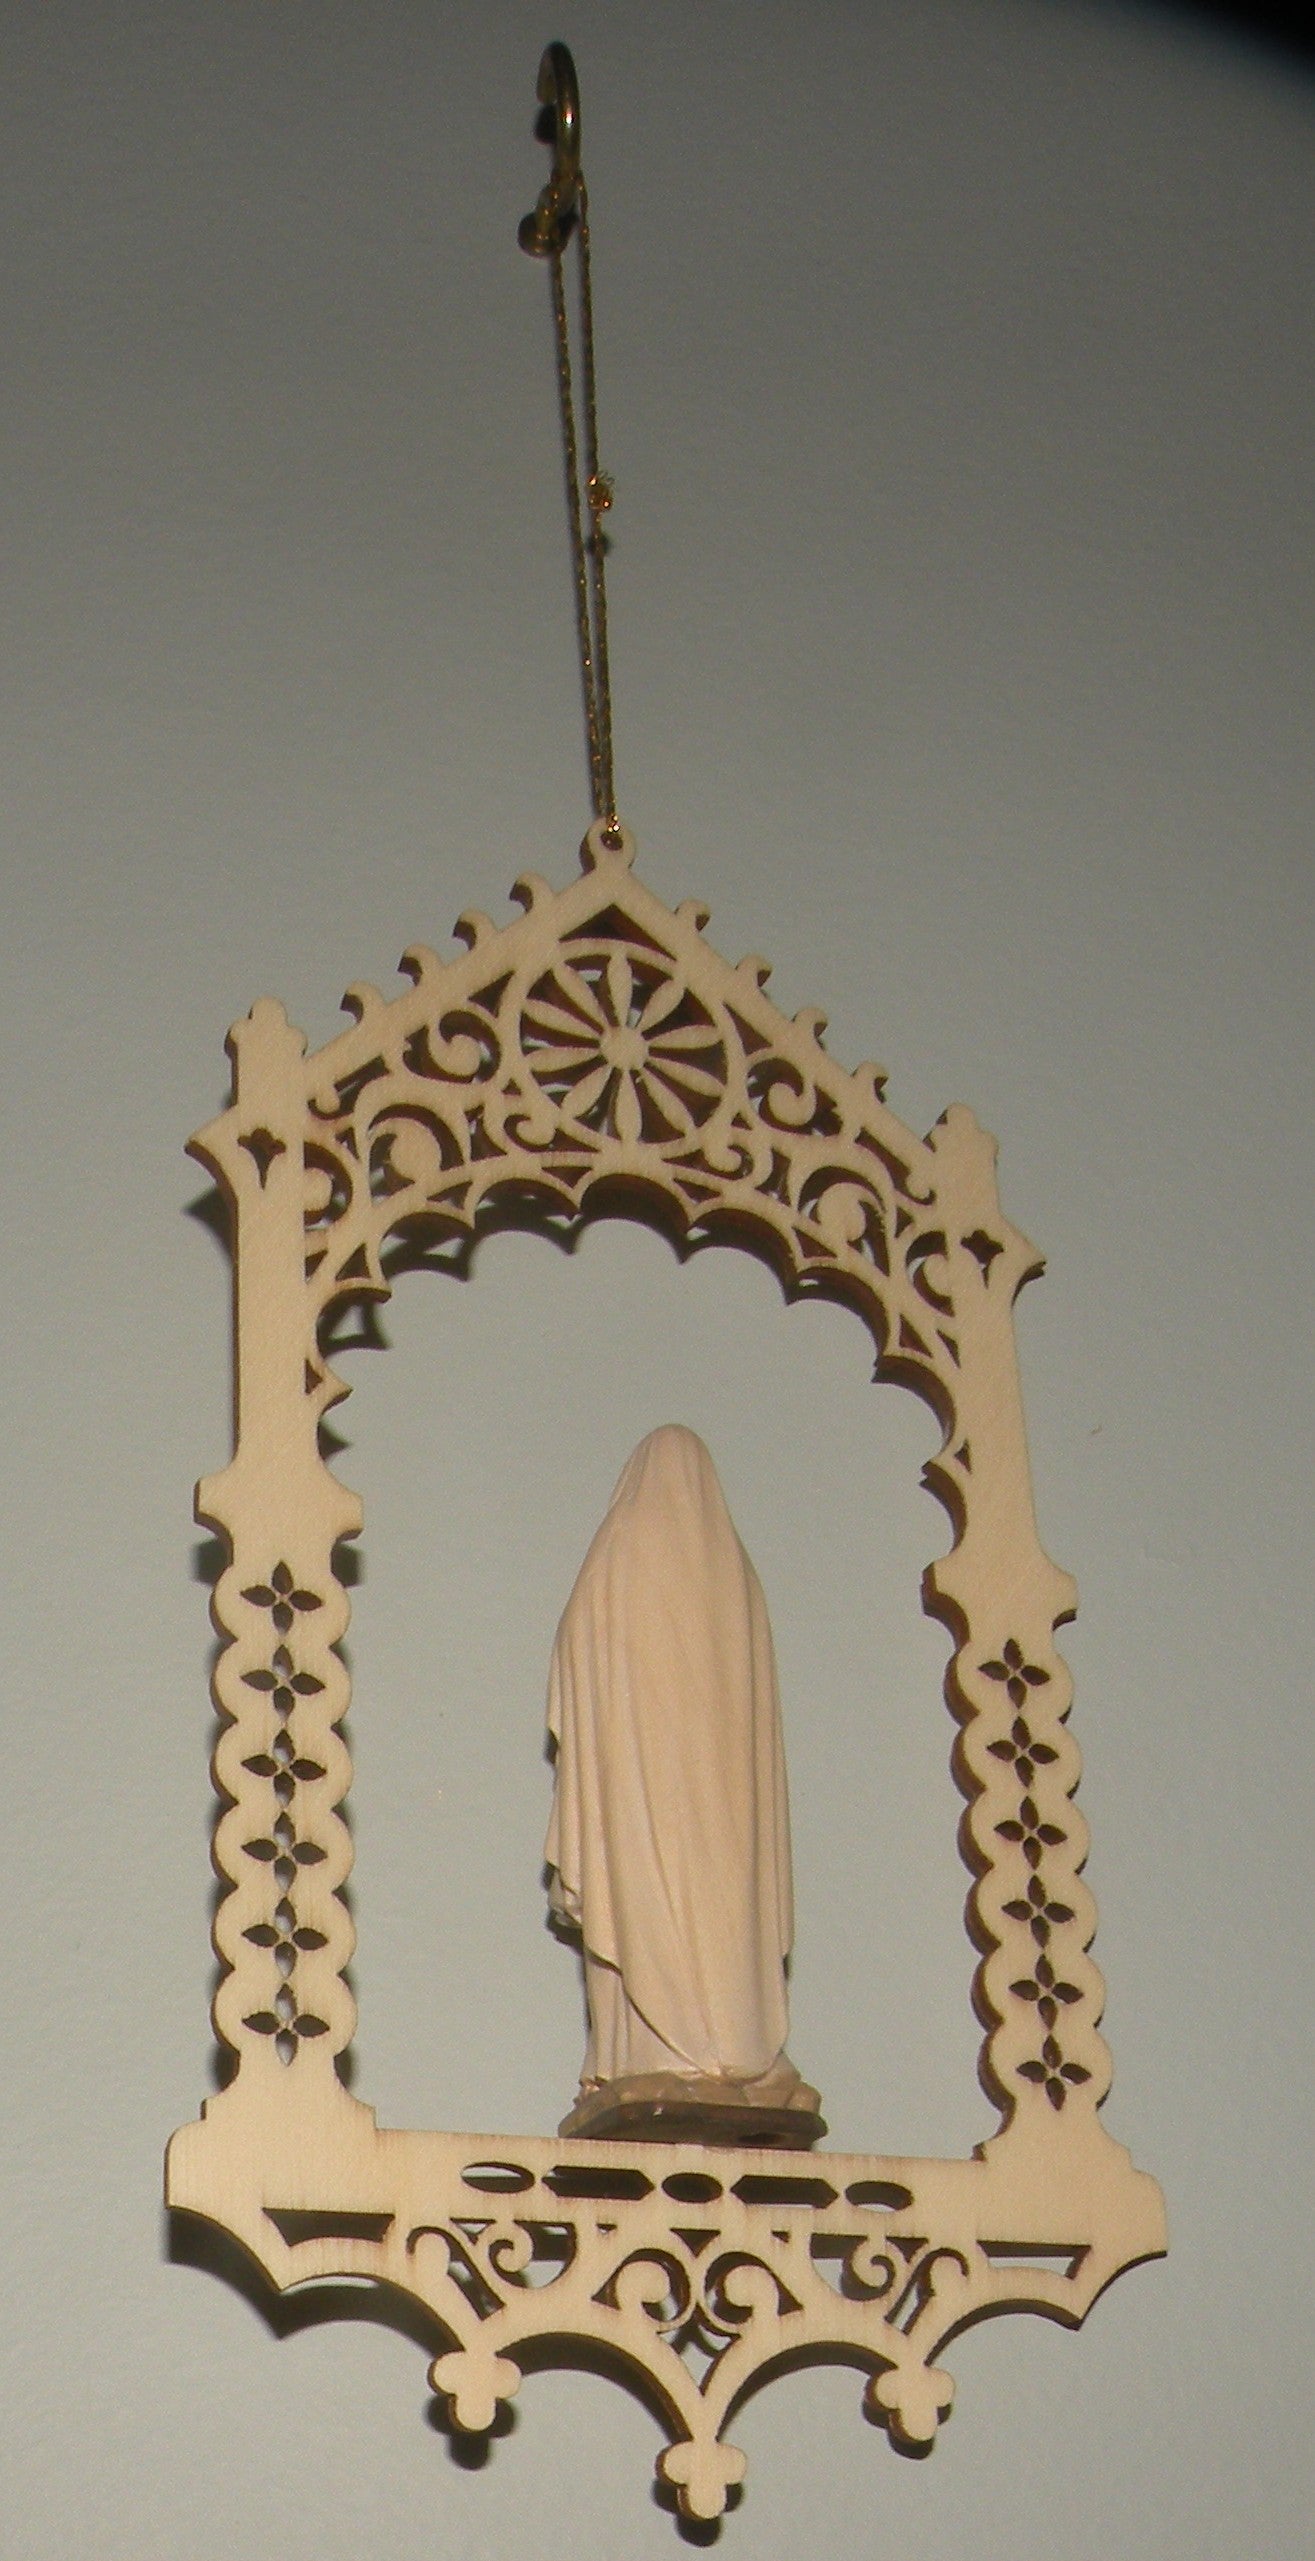 Virgin of Lourdes in niche  - 08363